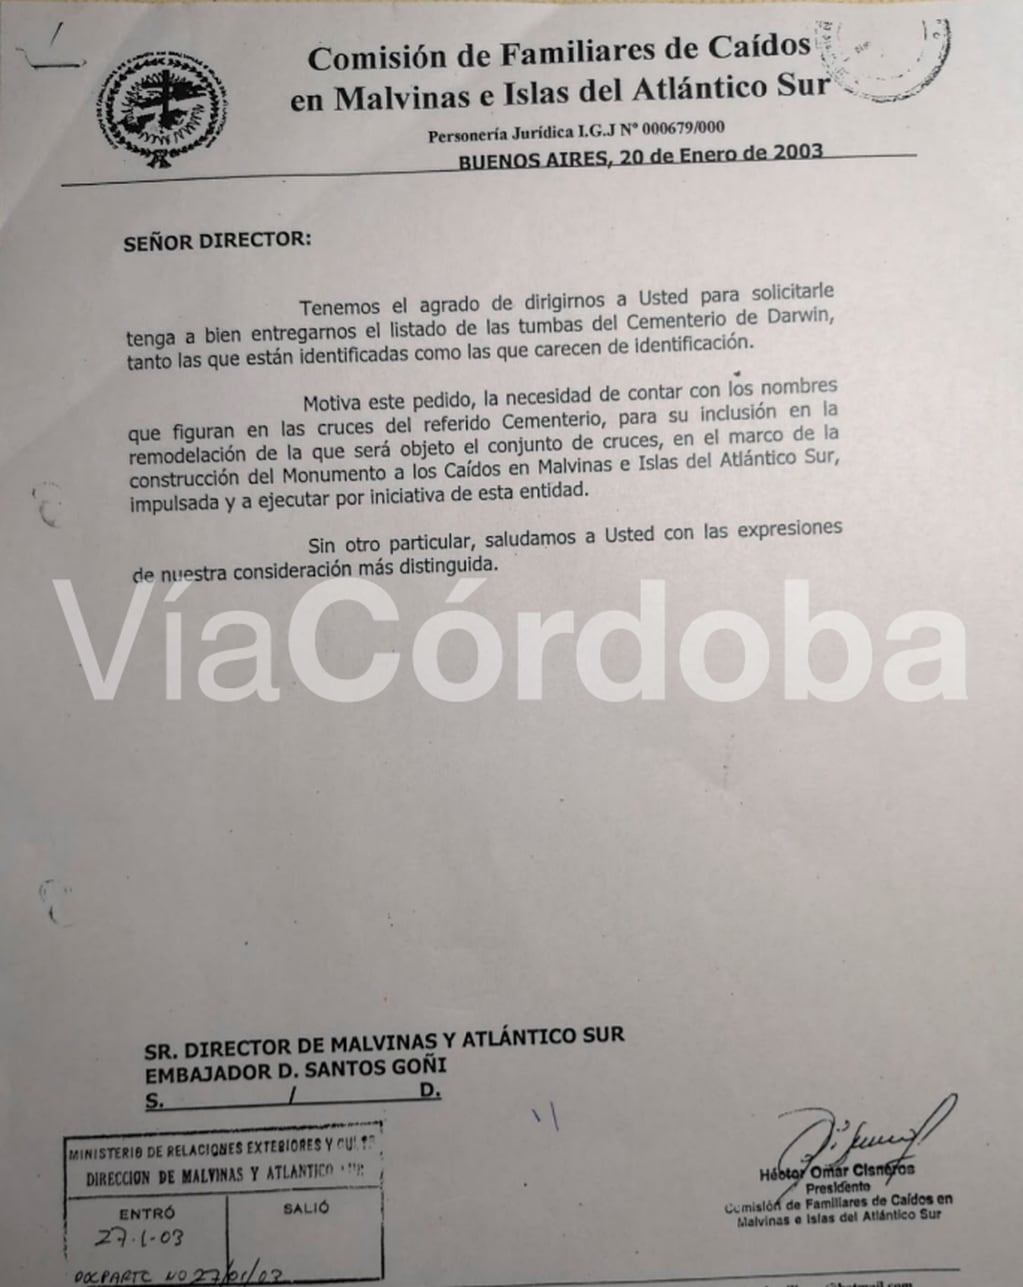 Nota original de la solicitud de la Comisión de Familiares a Cancillería, firmada por el entonces presidente de la institución, Héctor Cisneros.